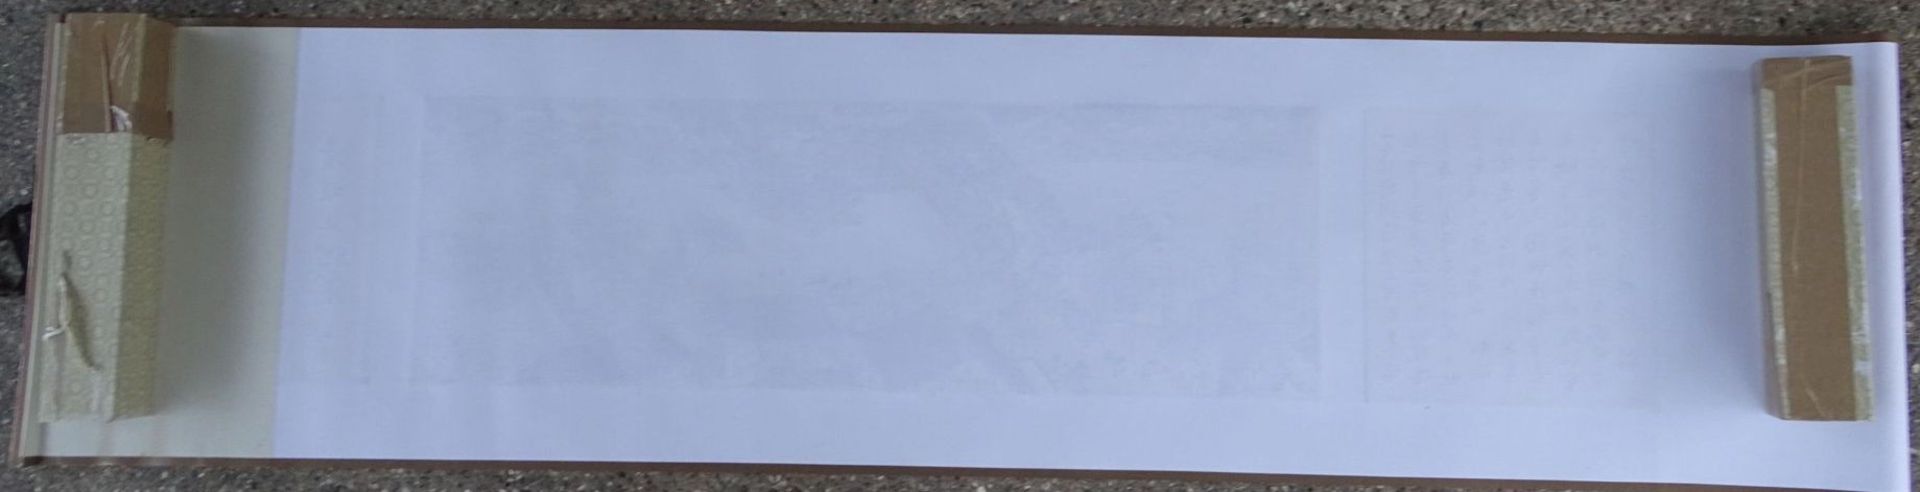 grosses chinesisches Seidenstickbild, gerollt in Karton, 40x170 cm, chines. beschriftet - Bild 11 aus 11